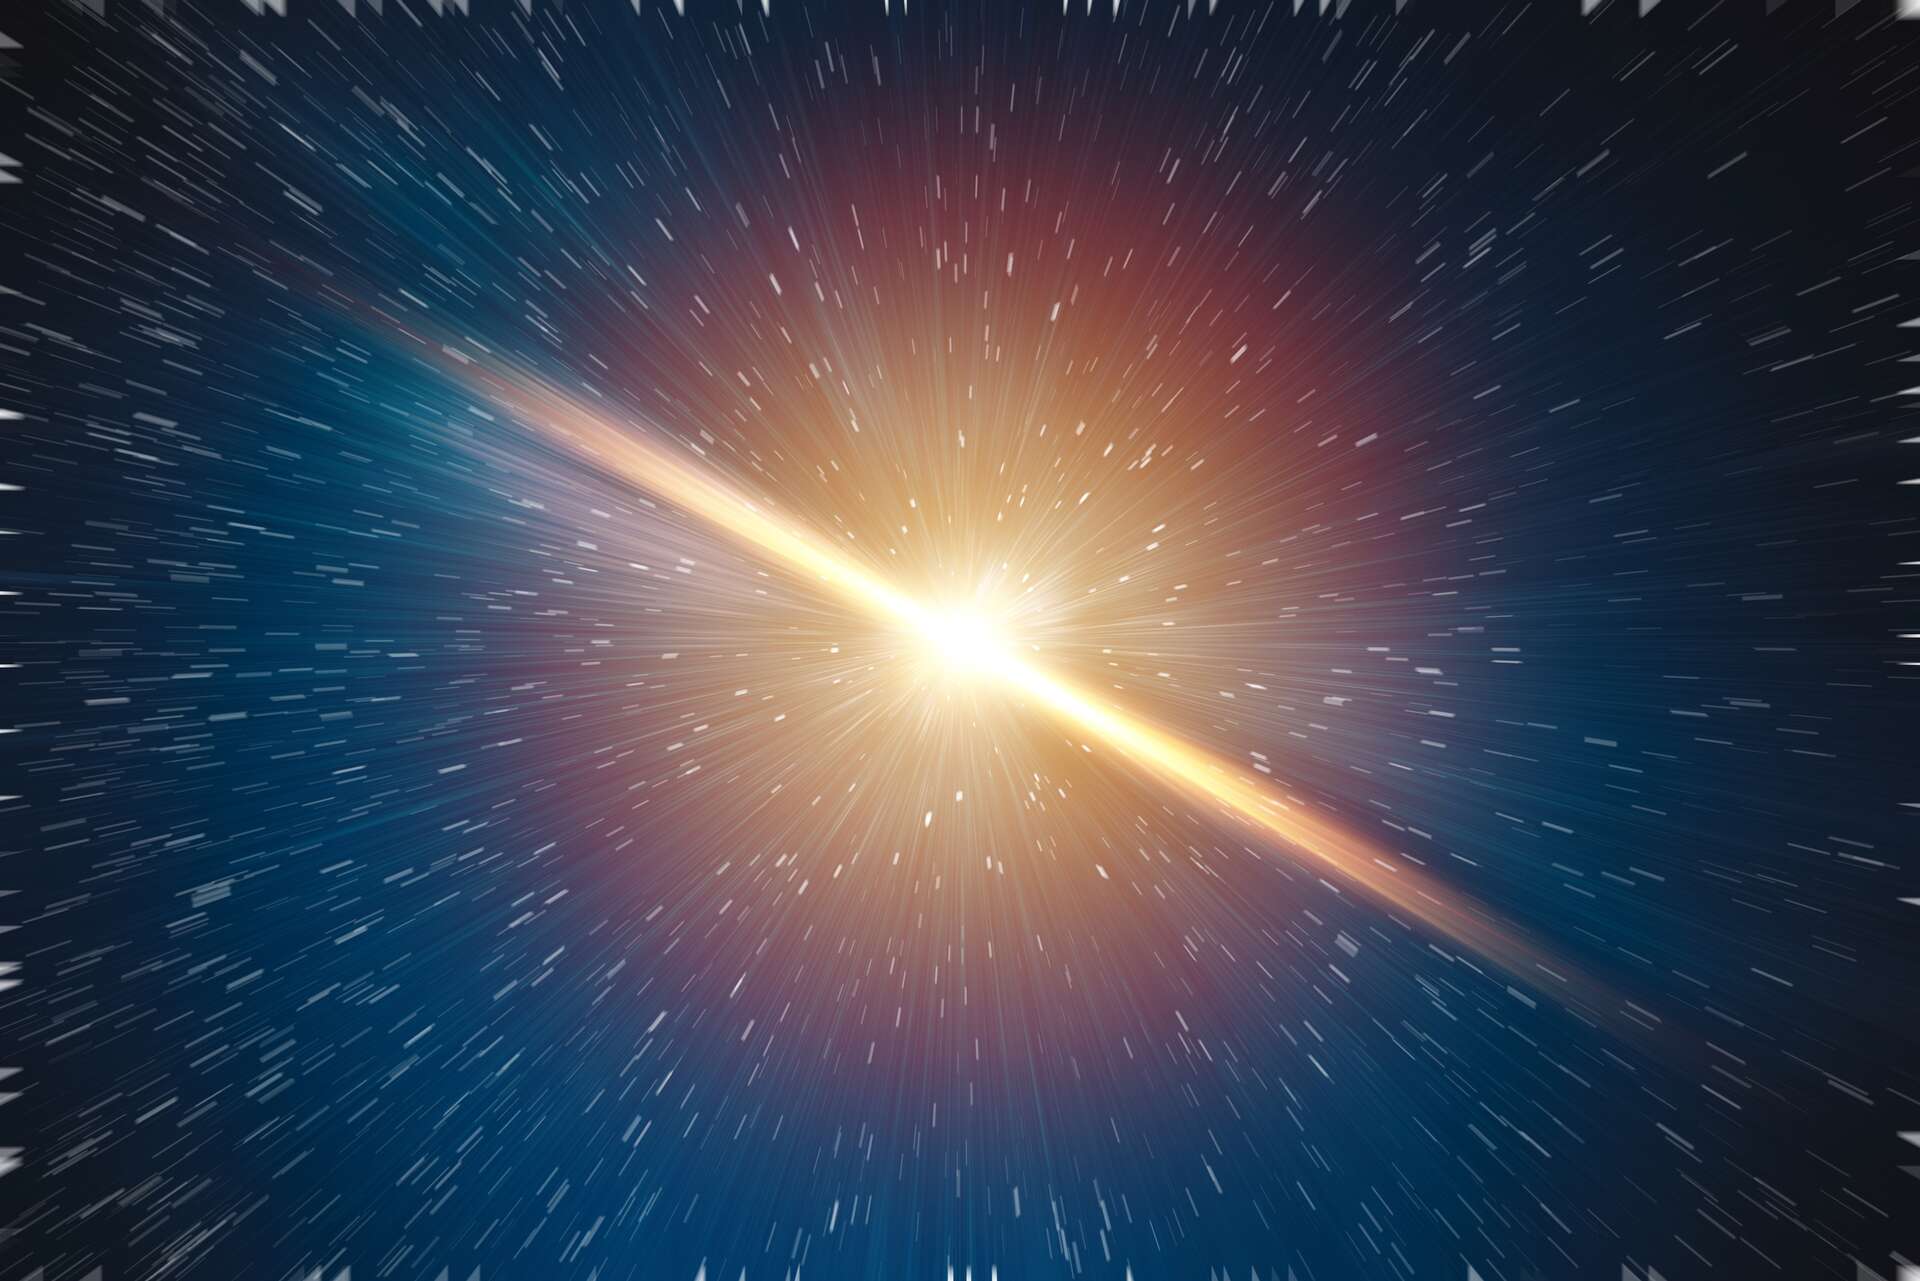 Sterren die exploderen in een supernova sturen een waarschuwingssignaal